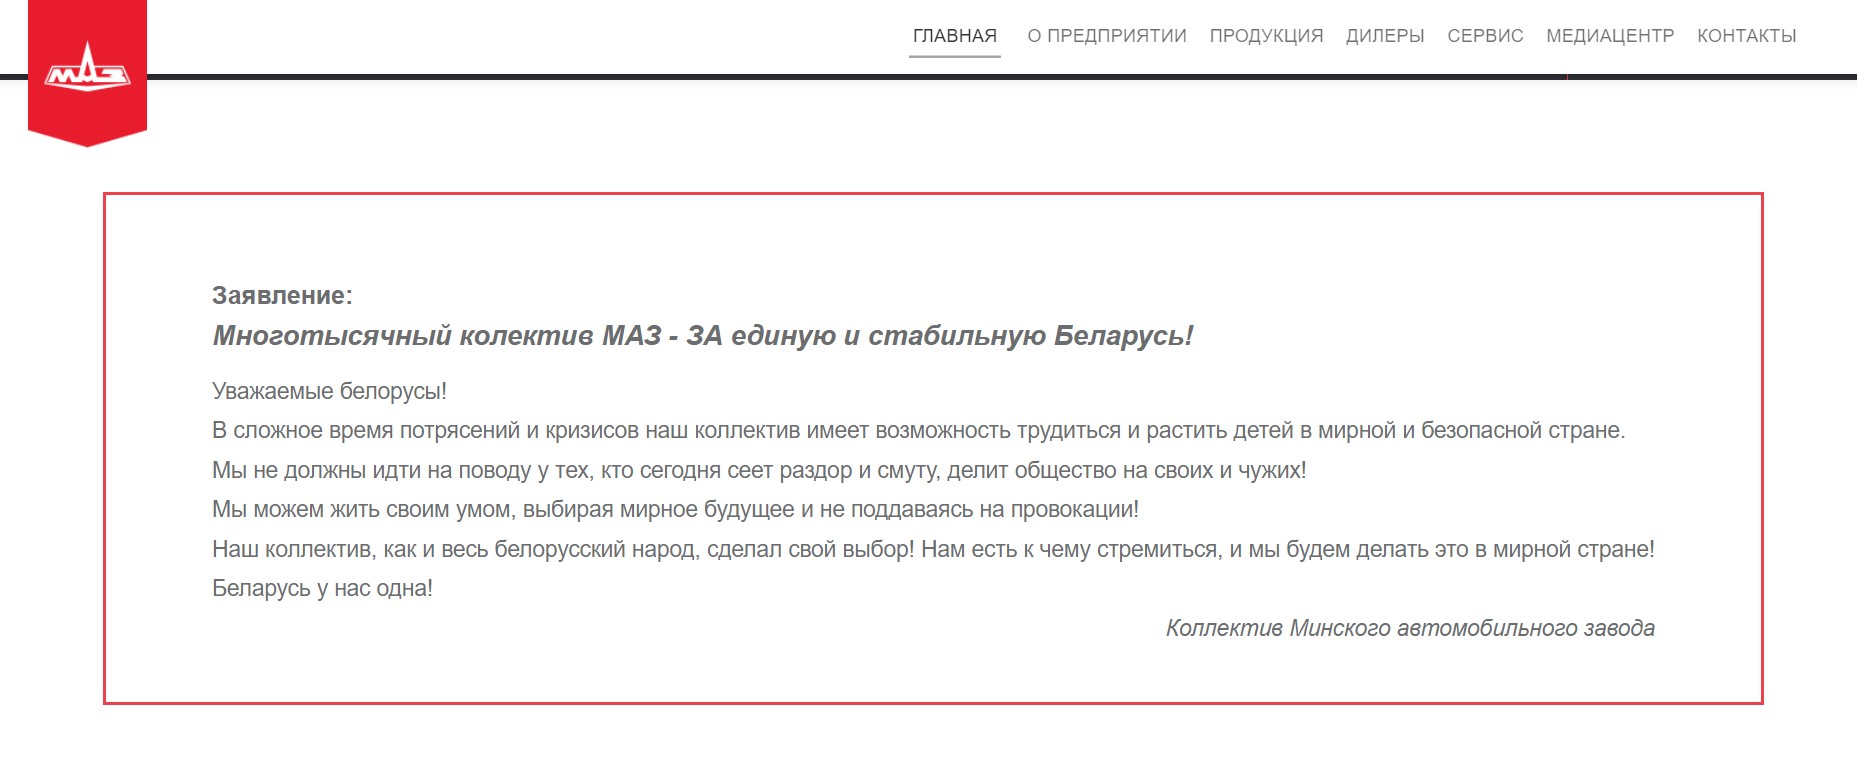 На сайте МАЗа появилось заявление завода в поддержку действующей власти